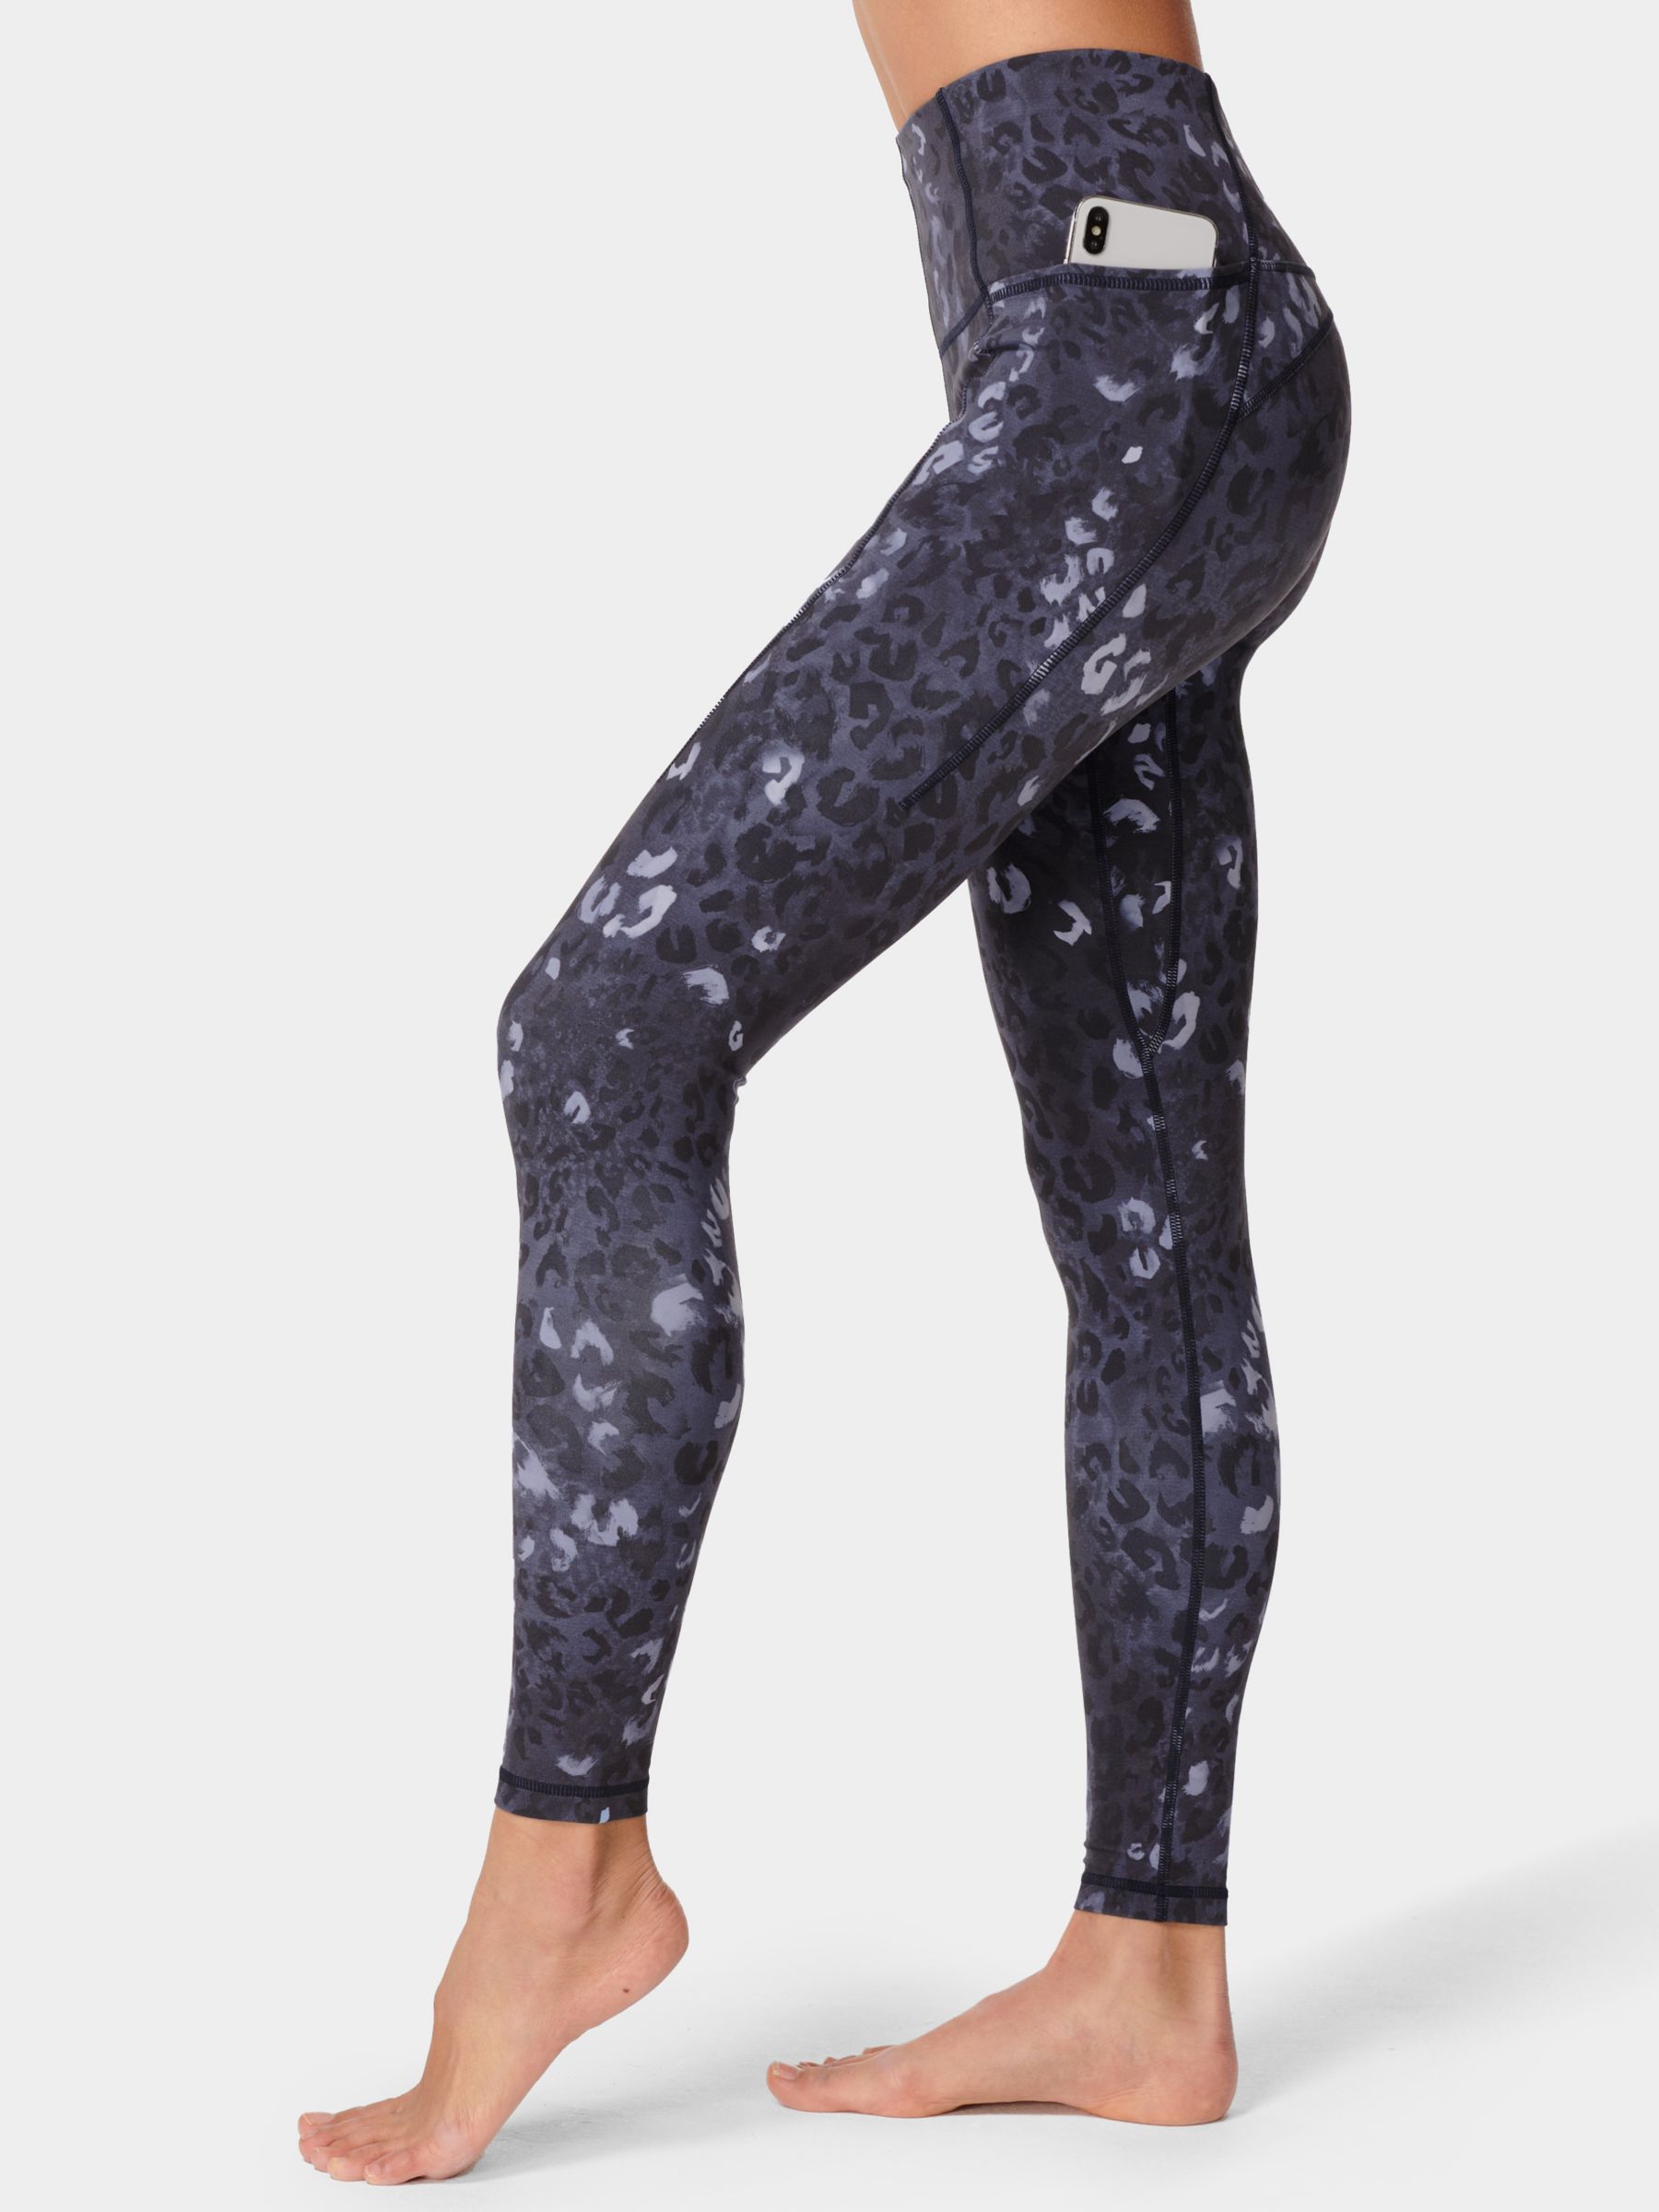 Super Soft 7/8 Yoga Leggings - Black Spray Dye Print, Women's Leggings